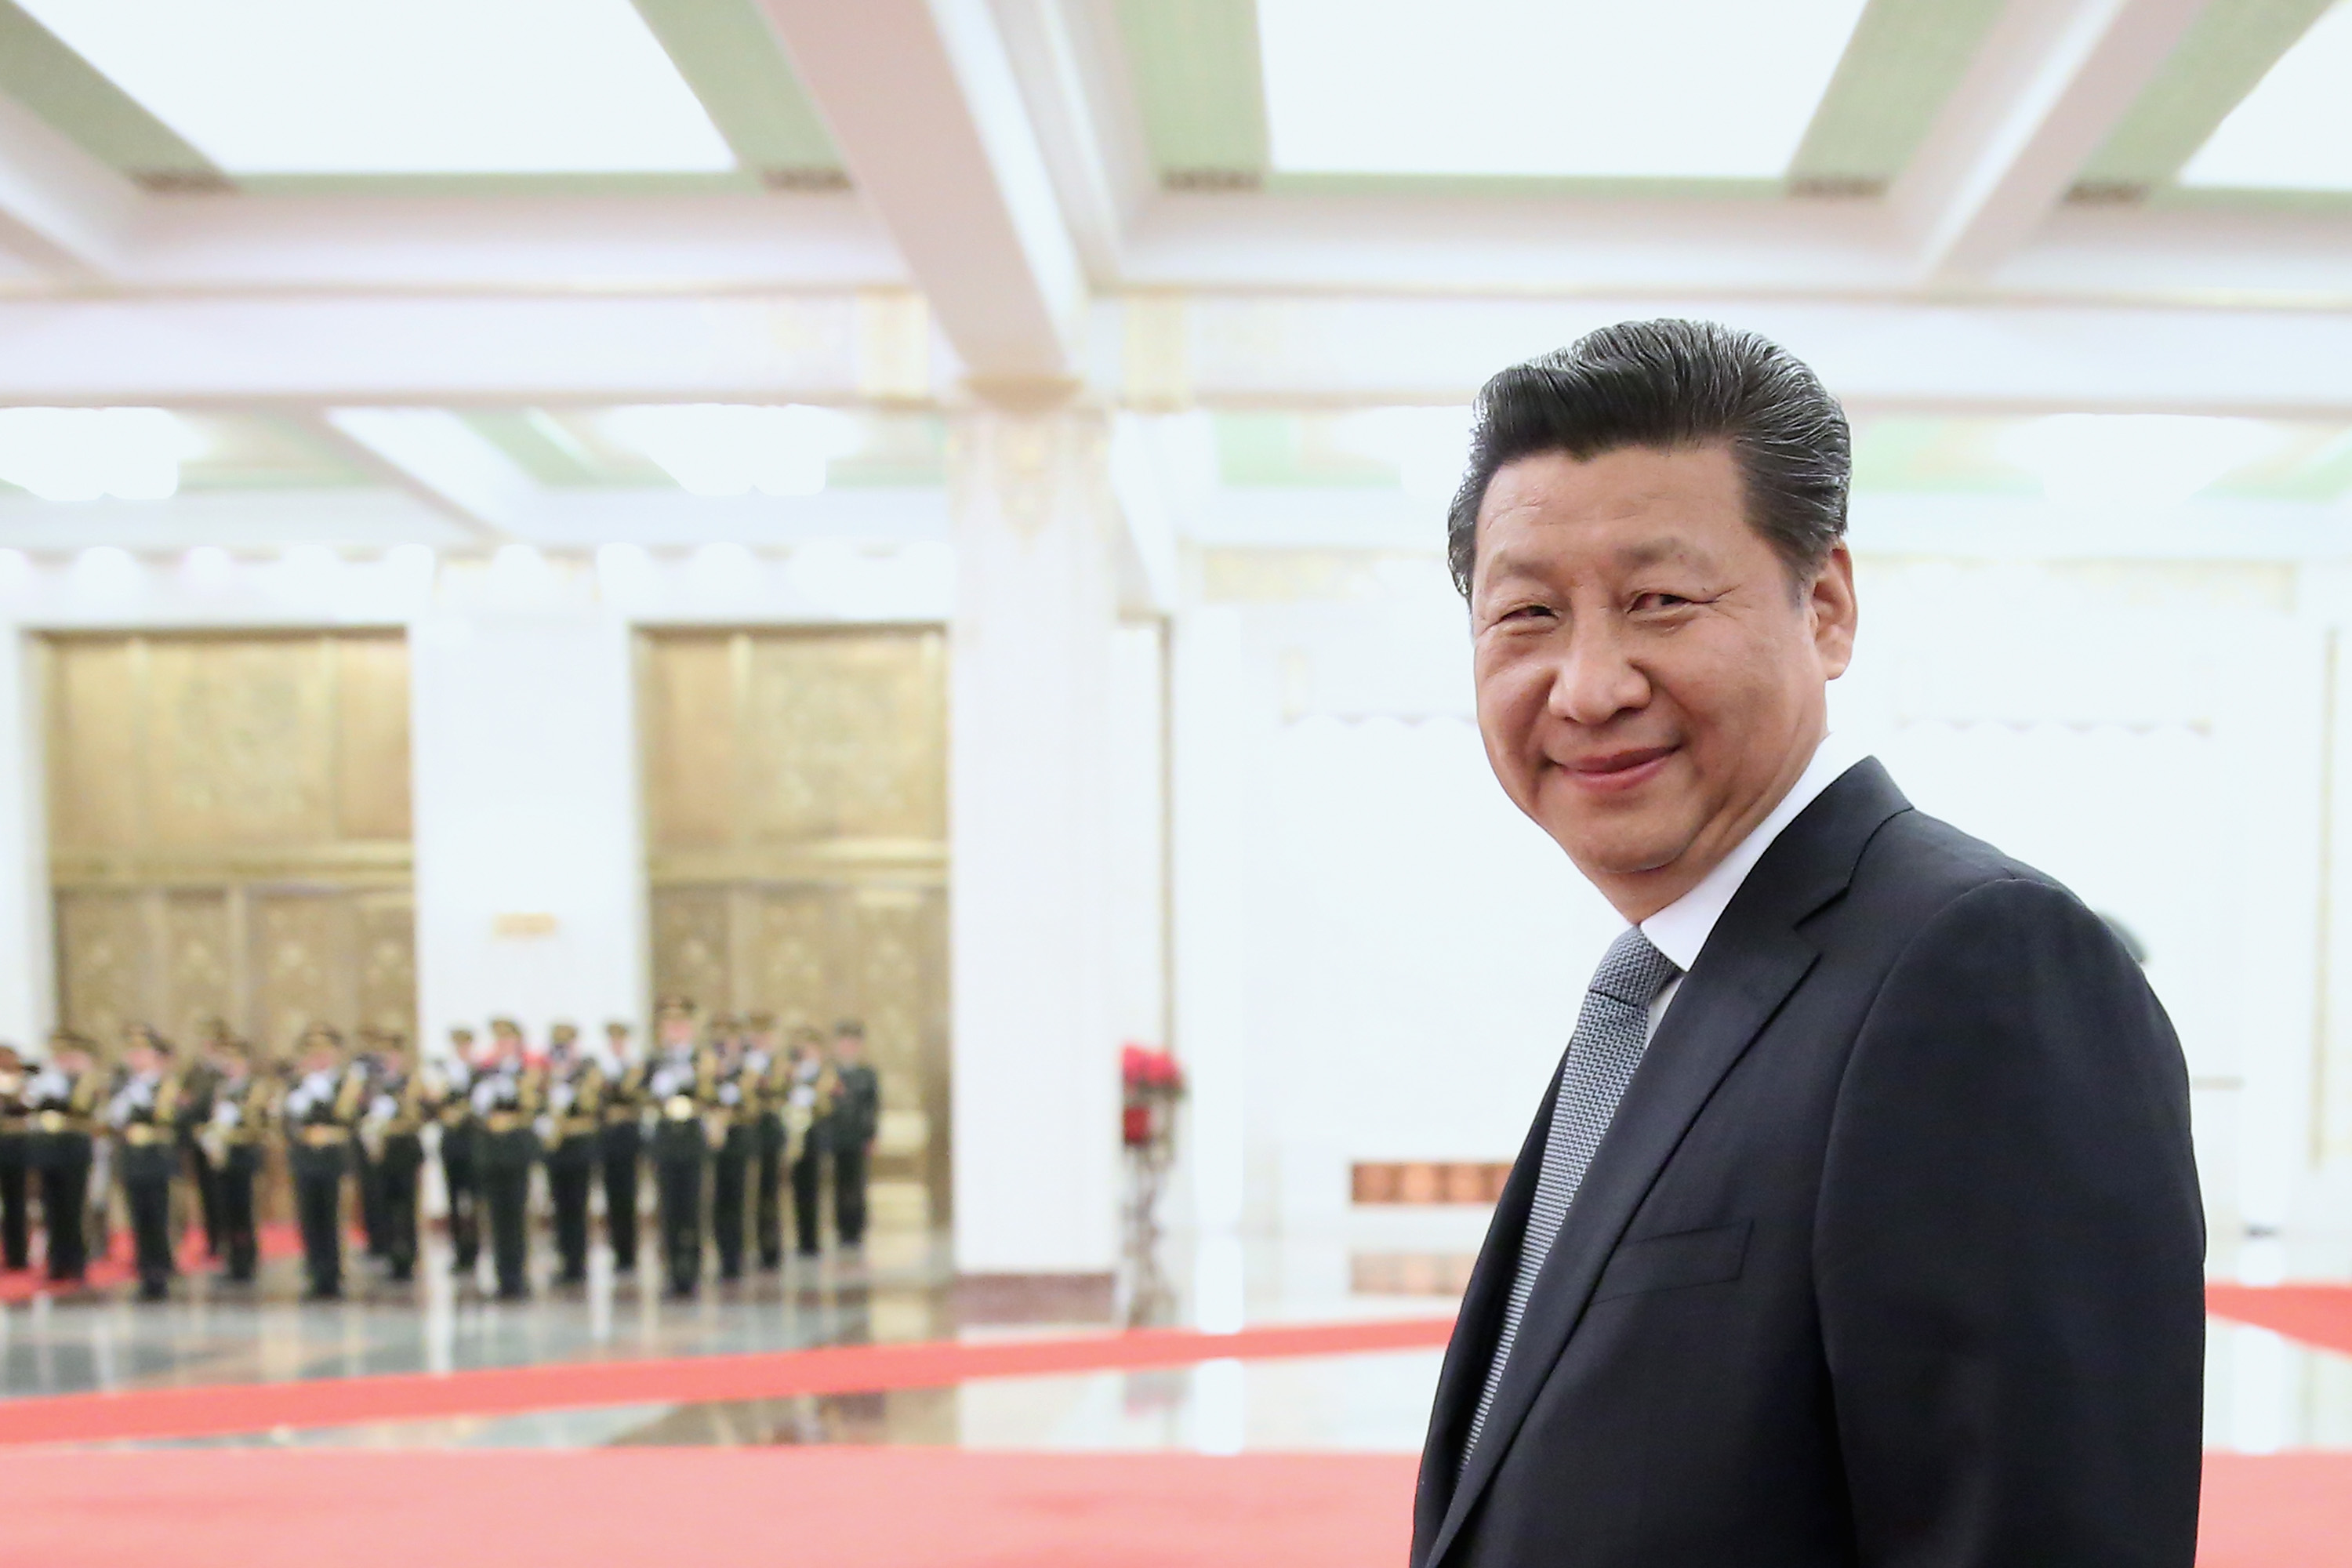 Sensations-Rede von Xi Jinping markiert Chinas Abkehr vom Kommunismus